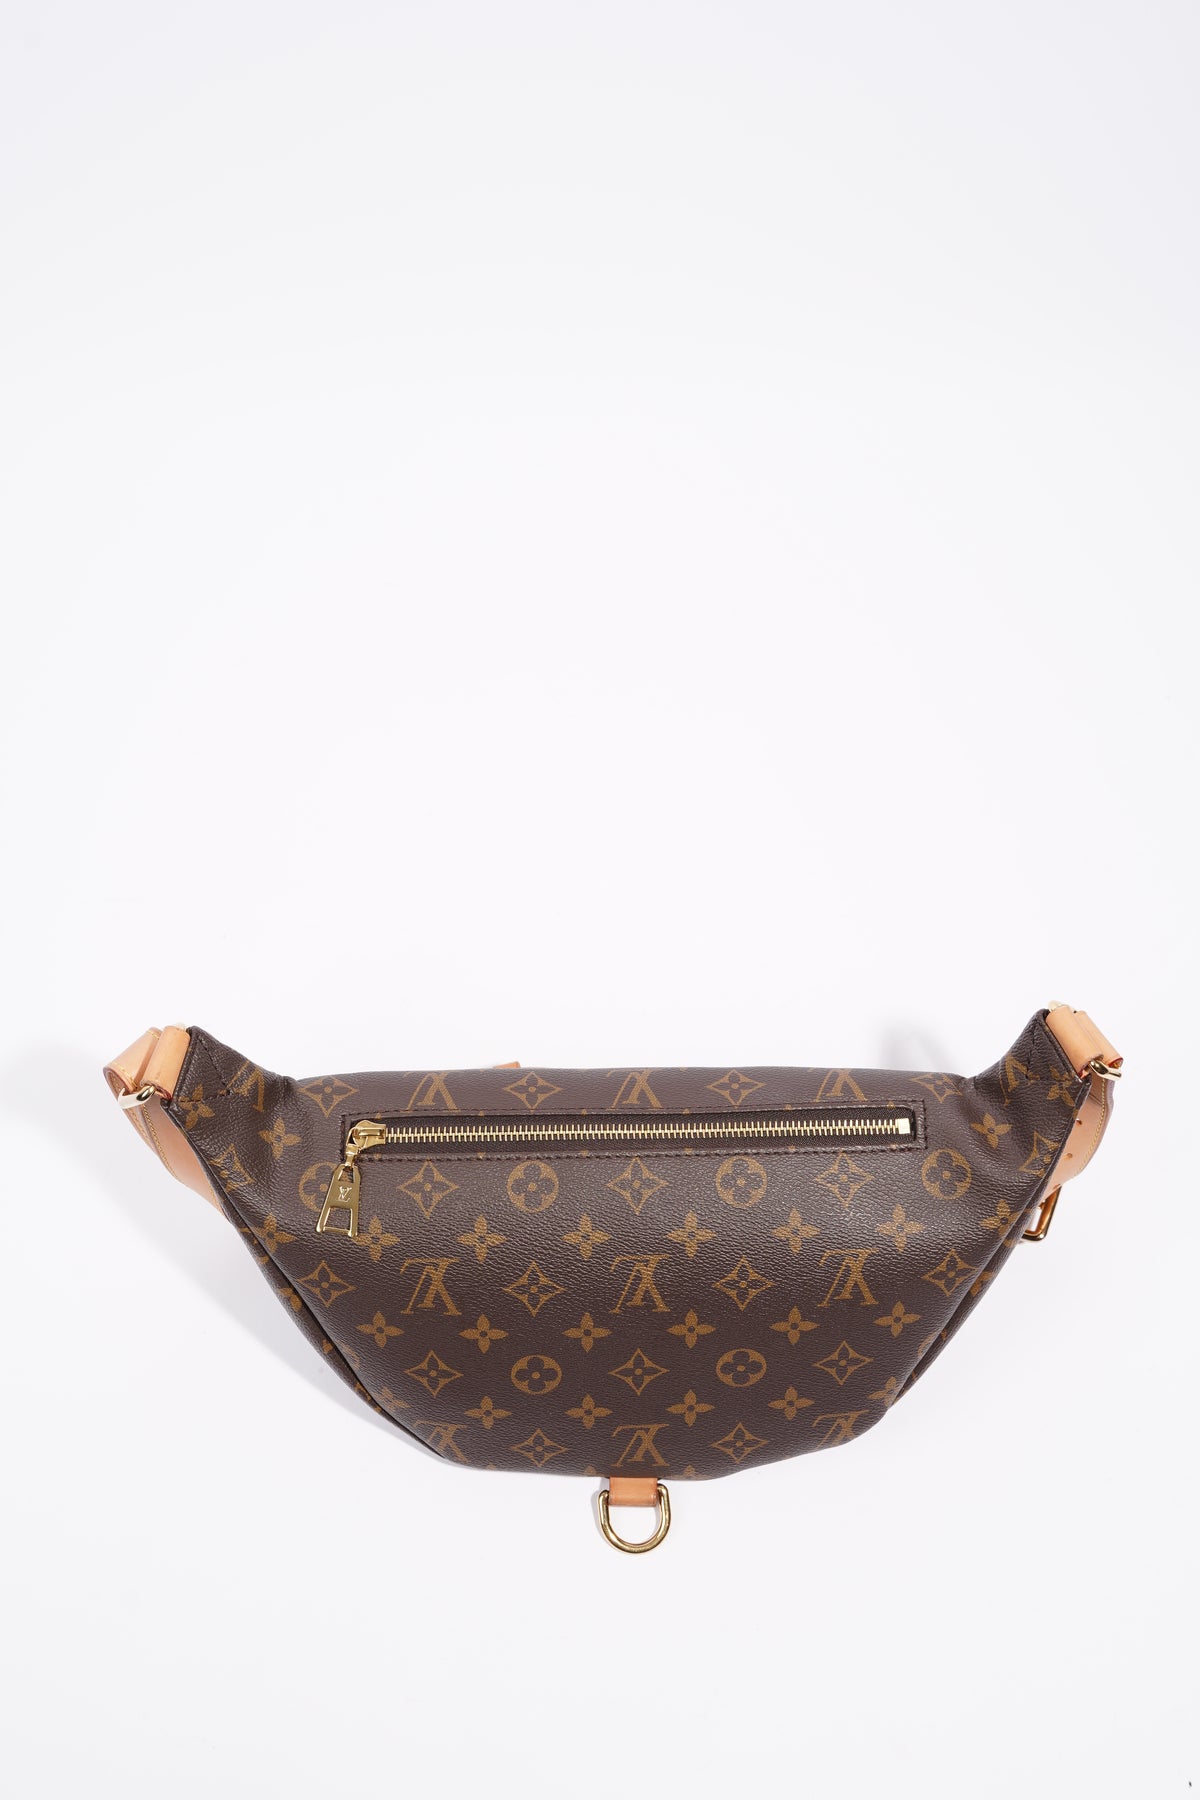 Louis Vuitton Womens Bum Bag Monogram – Luxe Collective